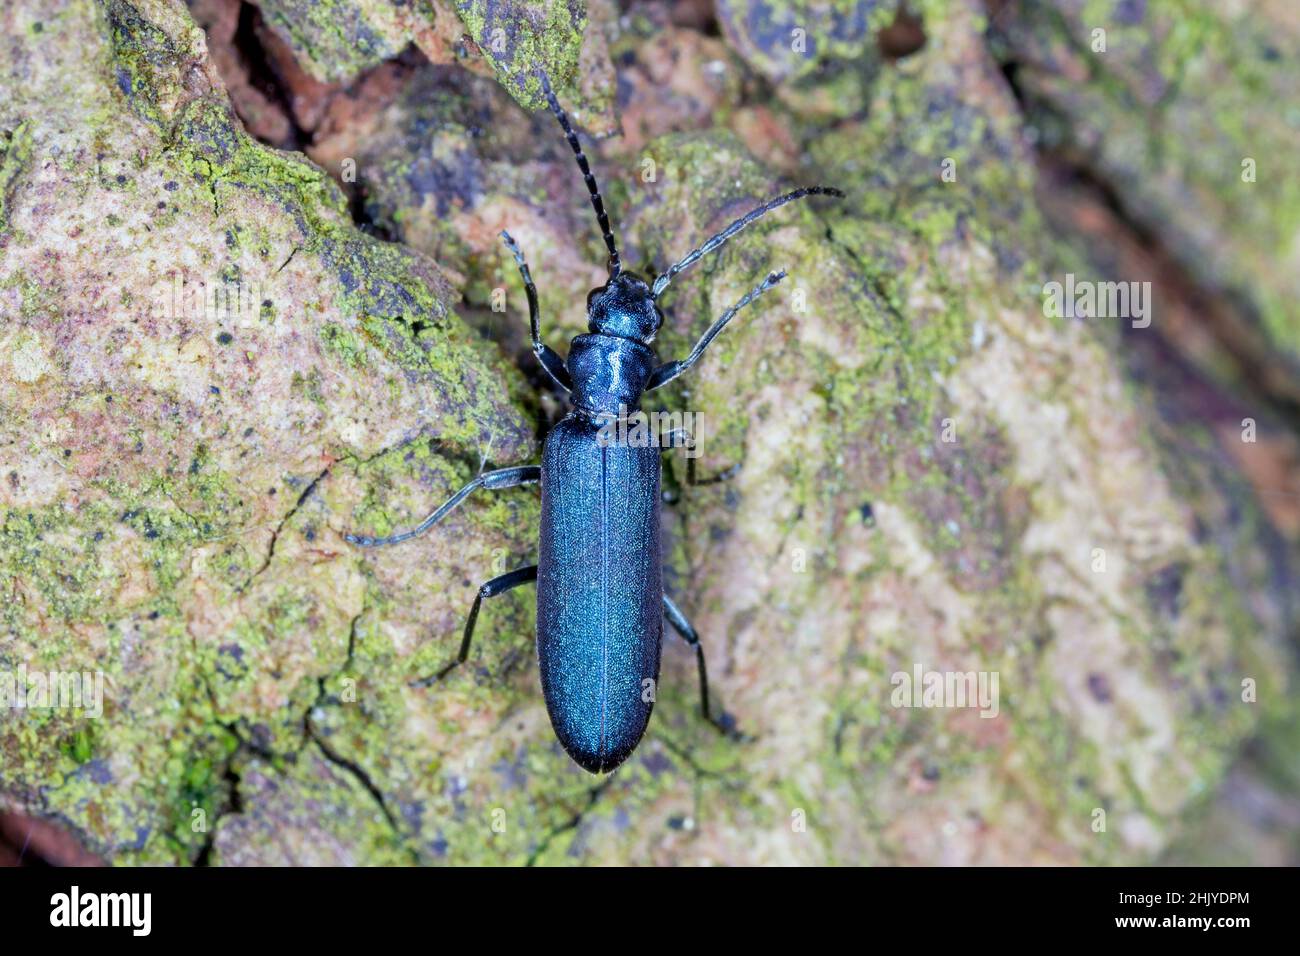 Escarabajo de la familia Oedeméridae conocido comúnmente como escarabajo blíster falso, género Ischnomera. Foto de stock